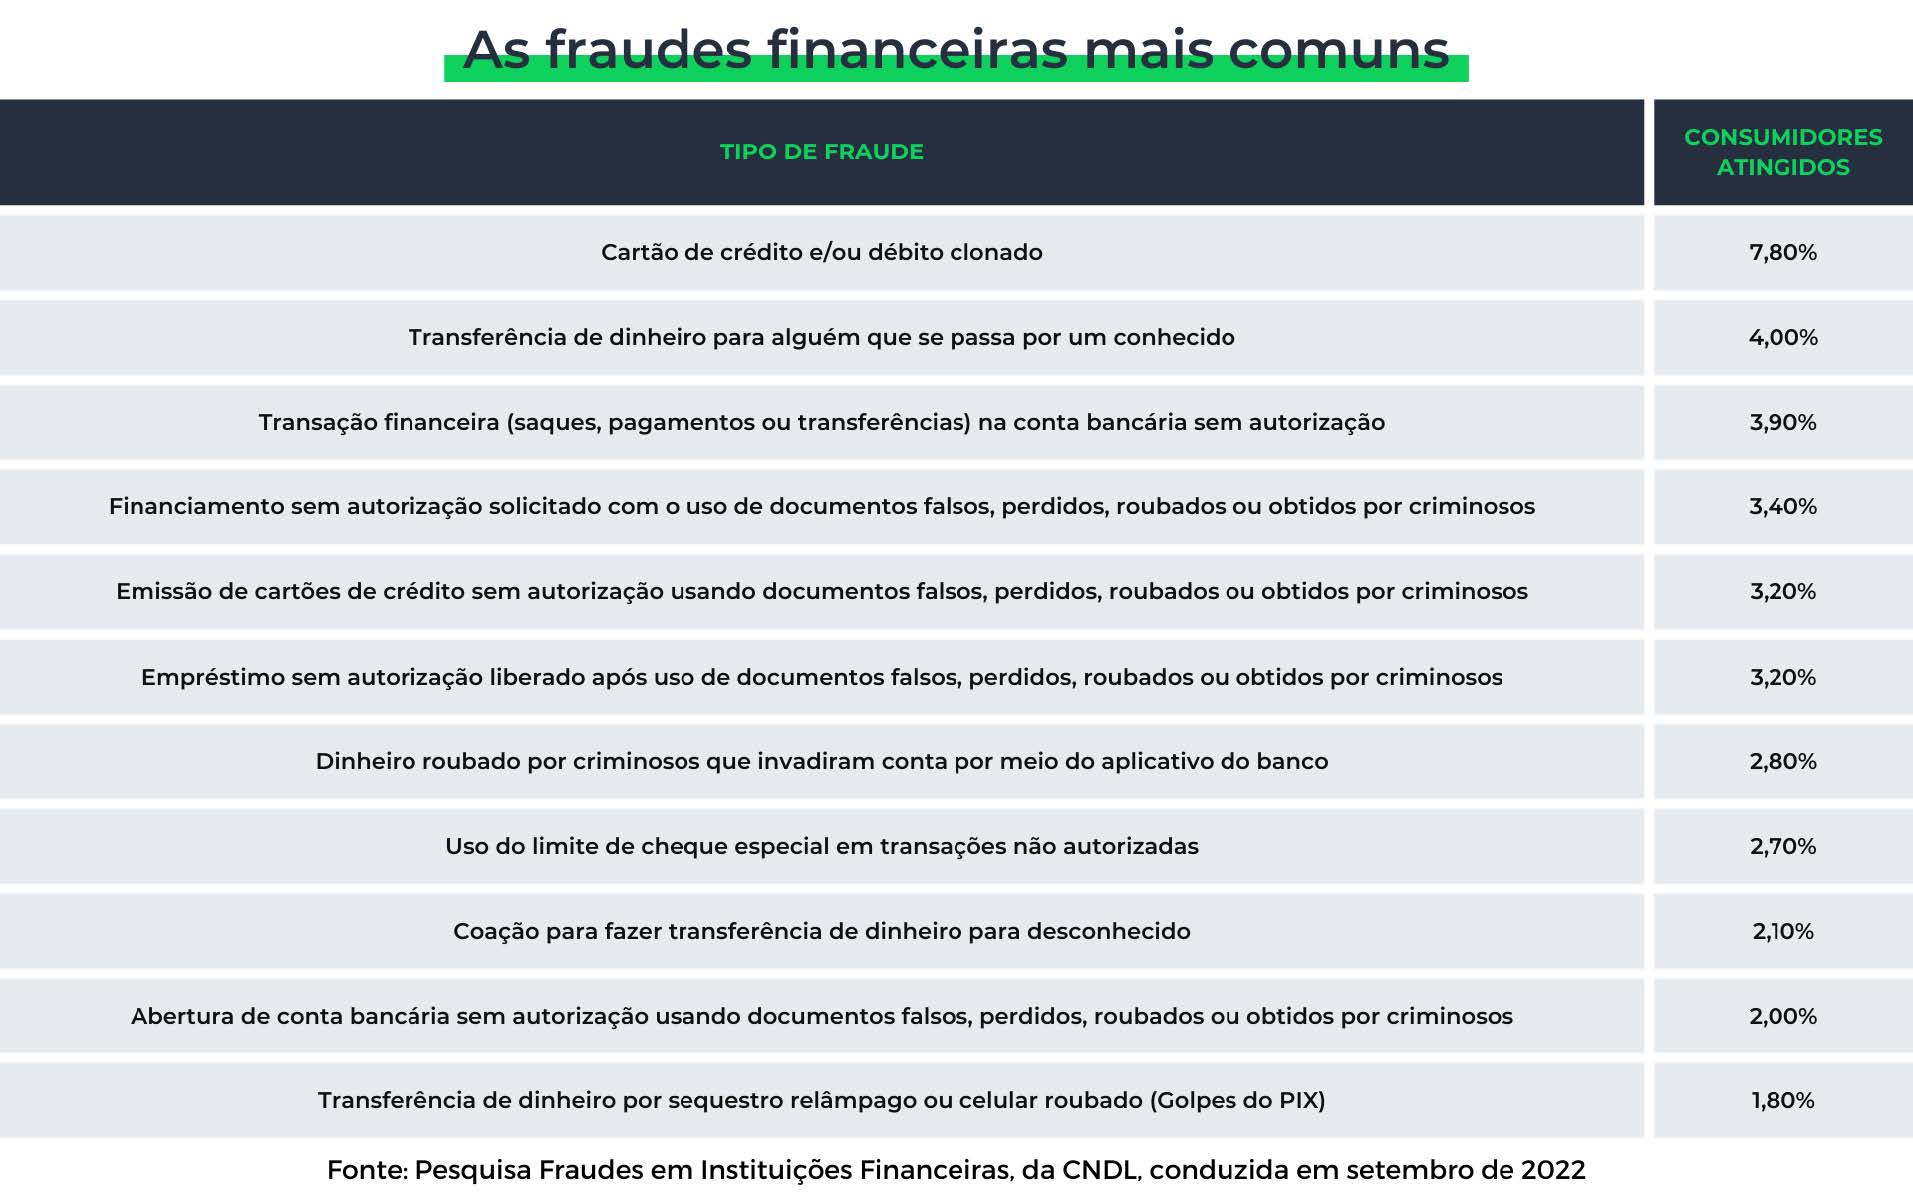 As fraudes financeiras mais comuns, segundo a CNDL, em setembro de 2022.